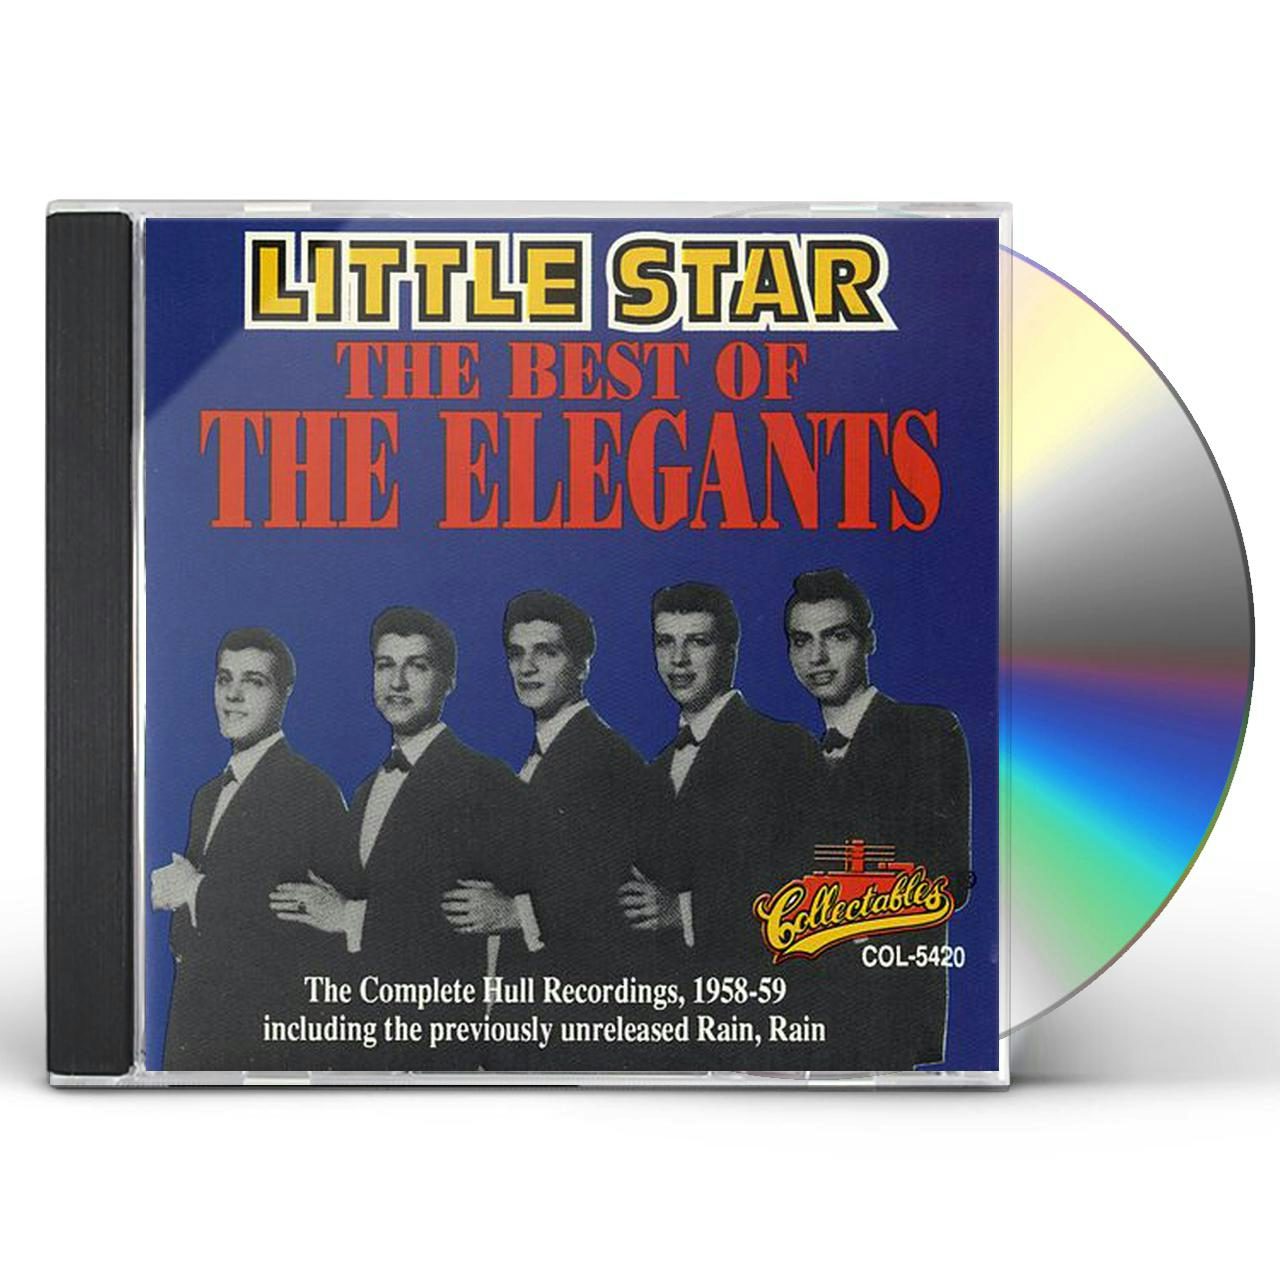 The Elegants LITTLE STAR CD